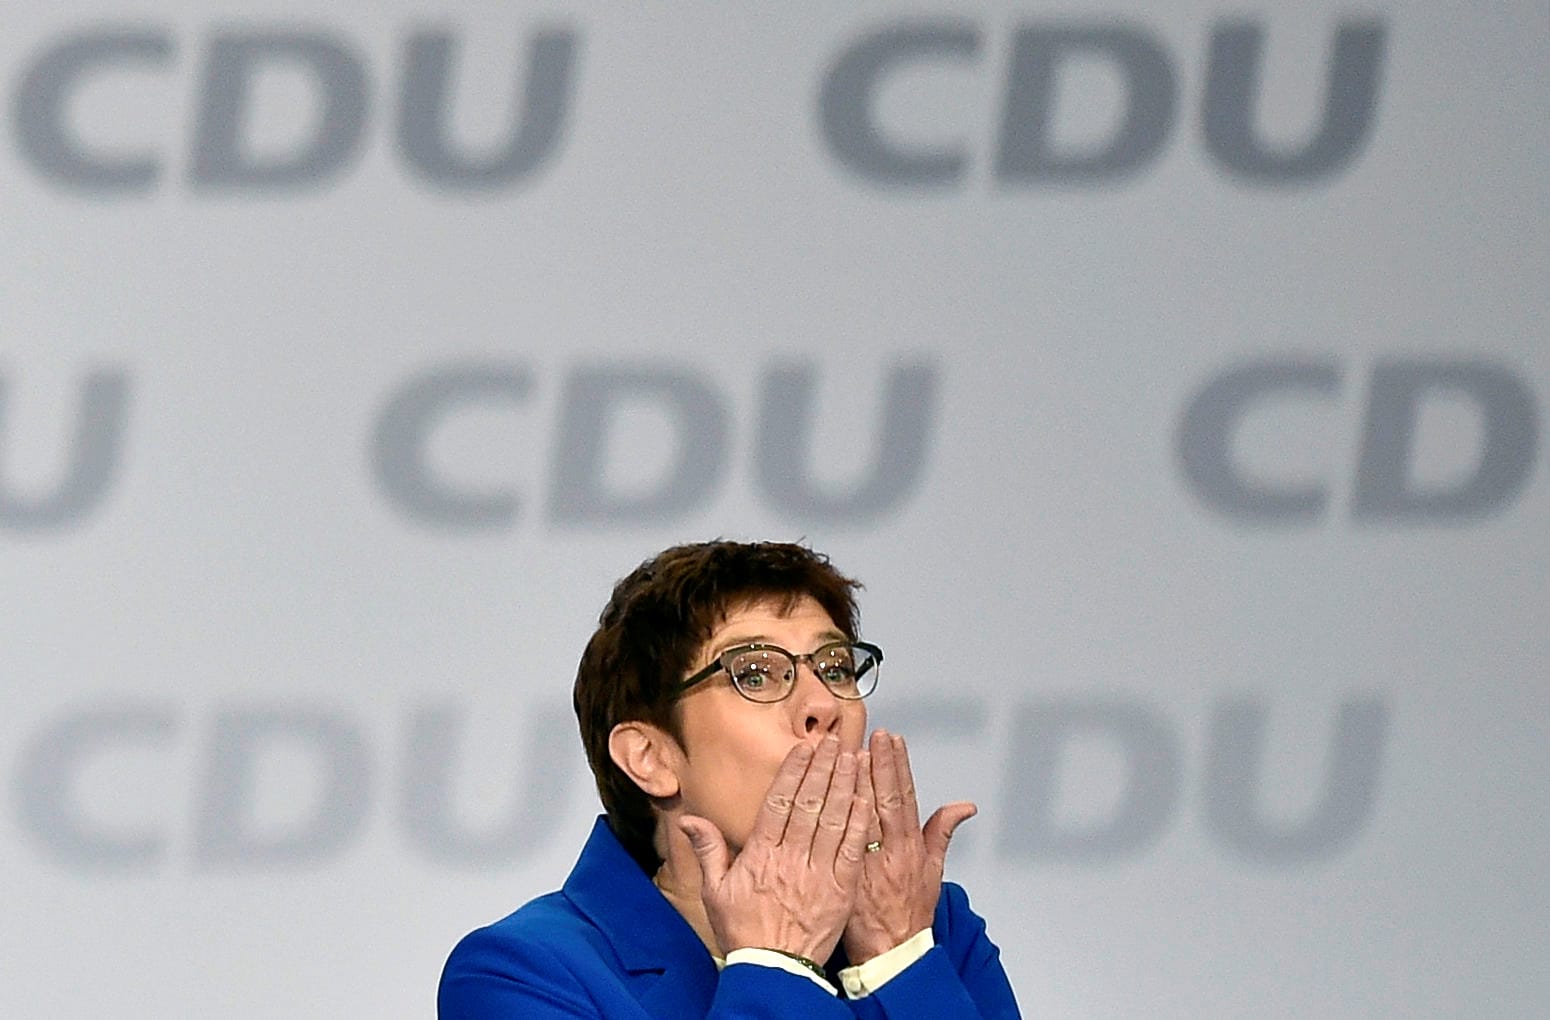 Parteijugend zeigt Misstrauen im Oktober 2019: Die Junge Union beschließt, der nächste Kanzlerkandidat der CDU solle per Urwahl bestimmt werden. Das ist ein klares Misstrauensvotum gegen CDU-Chefin Annegret Kramp-Karrenbauer. (Symbolbild)